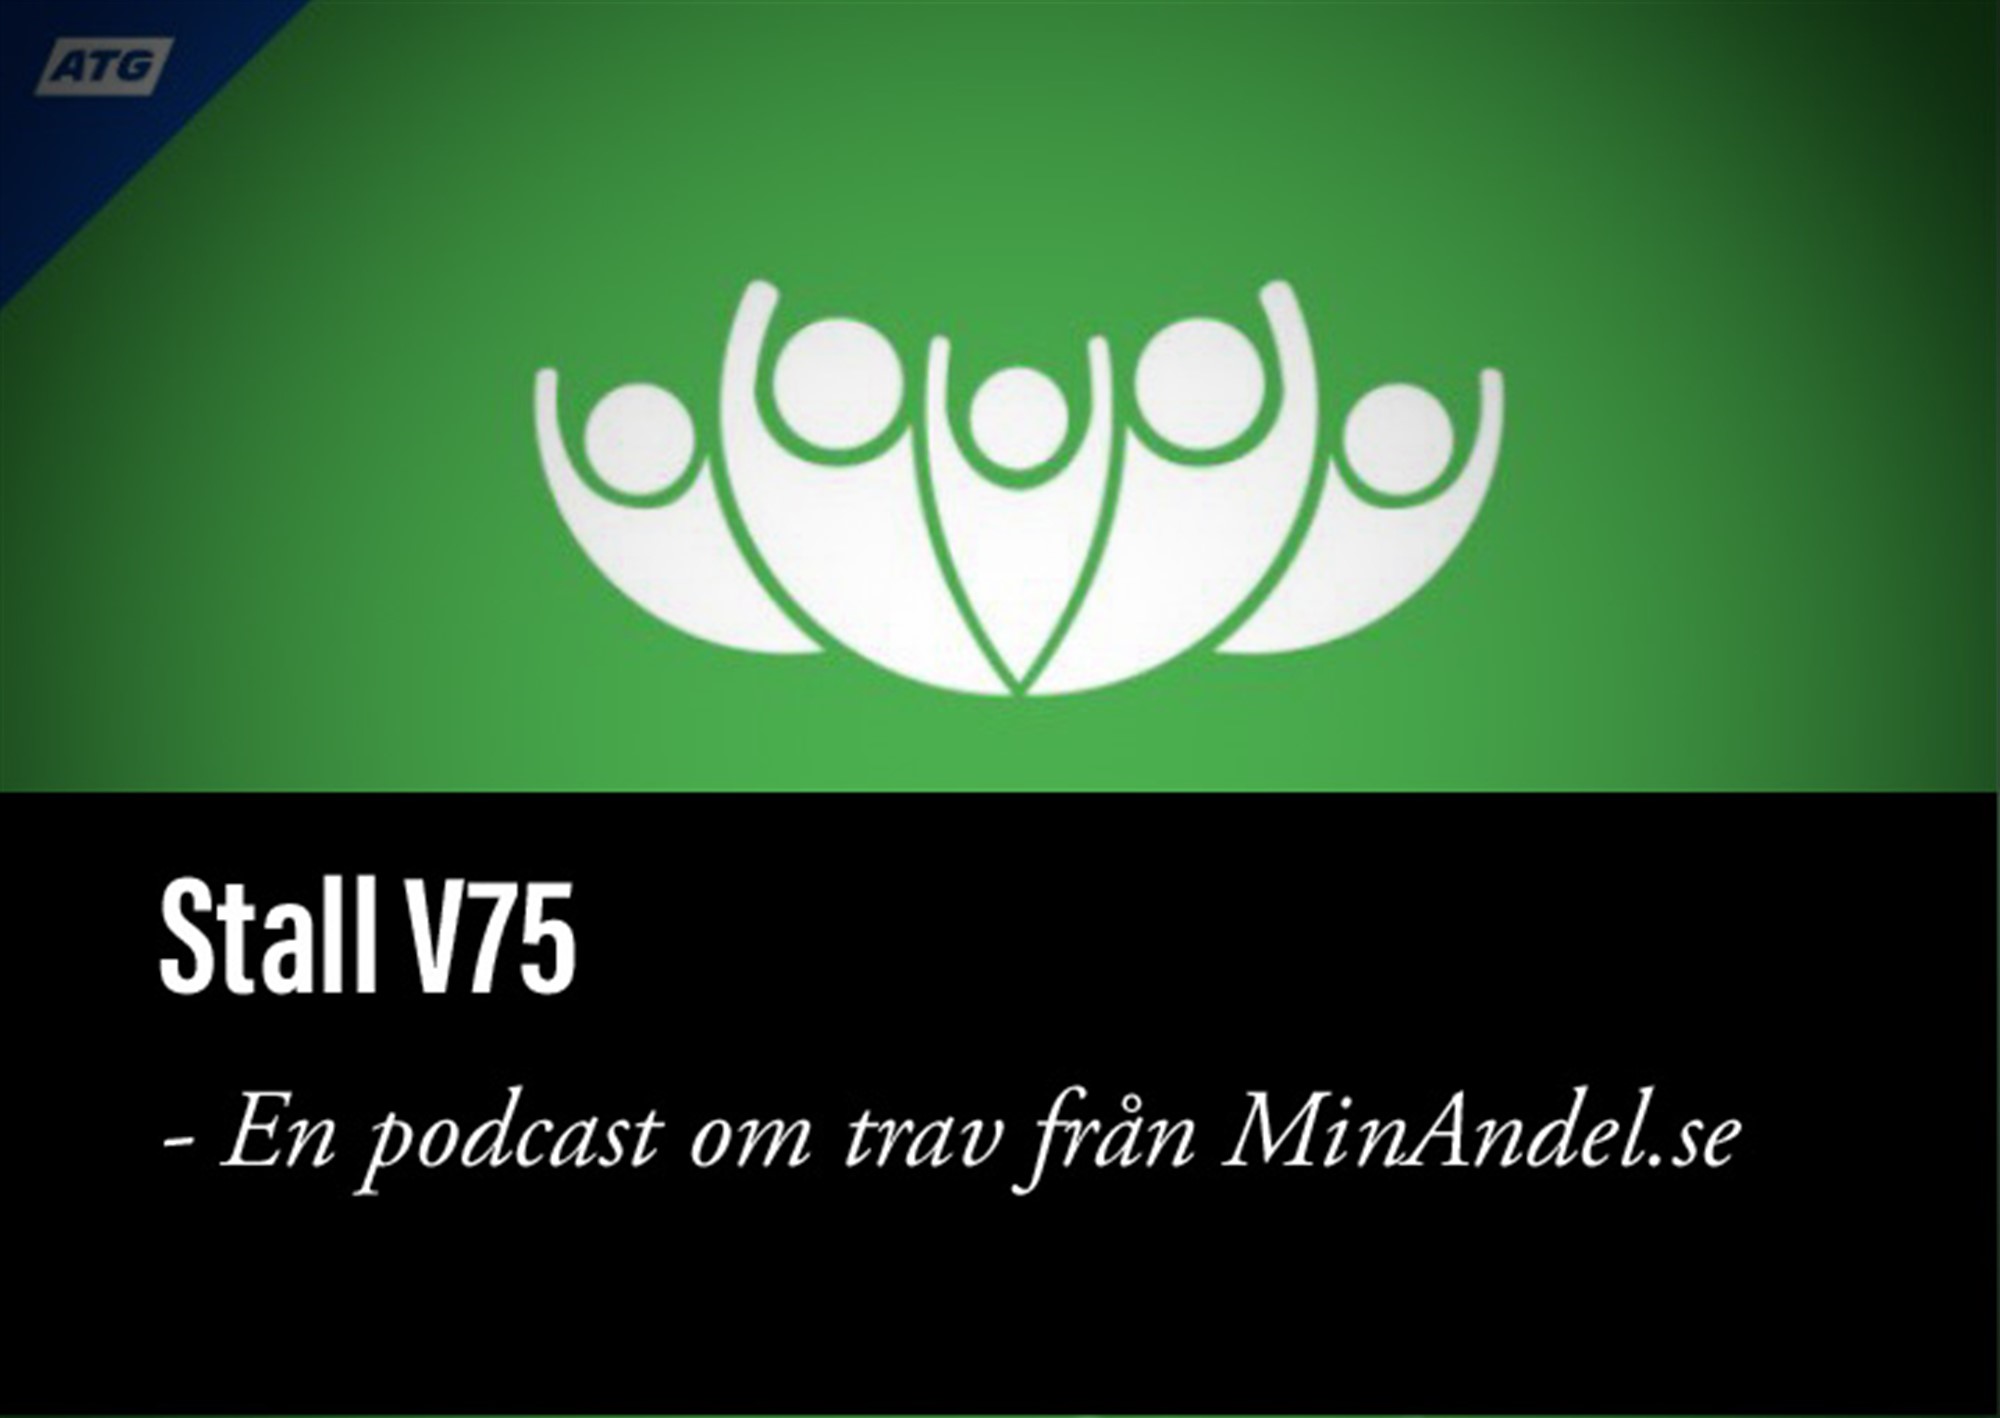 V75 30/12, 31/12 Halmstad, Örebro. Presenteras av MinAndel.se